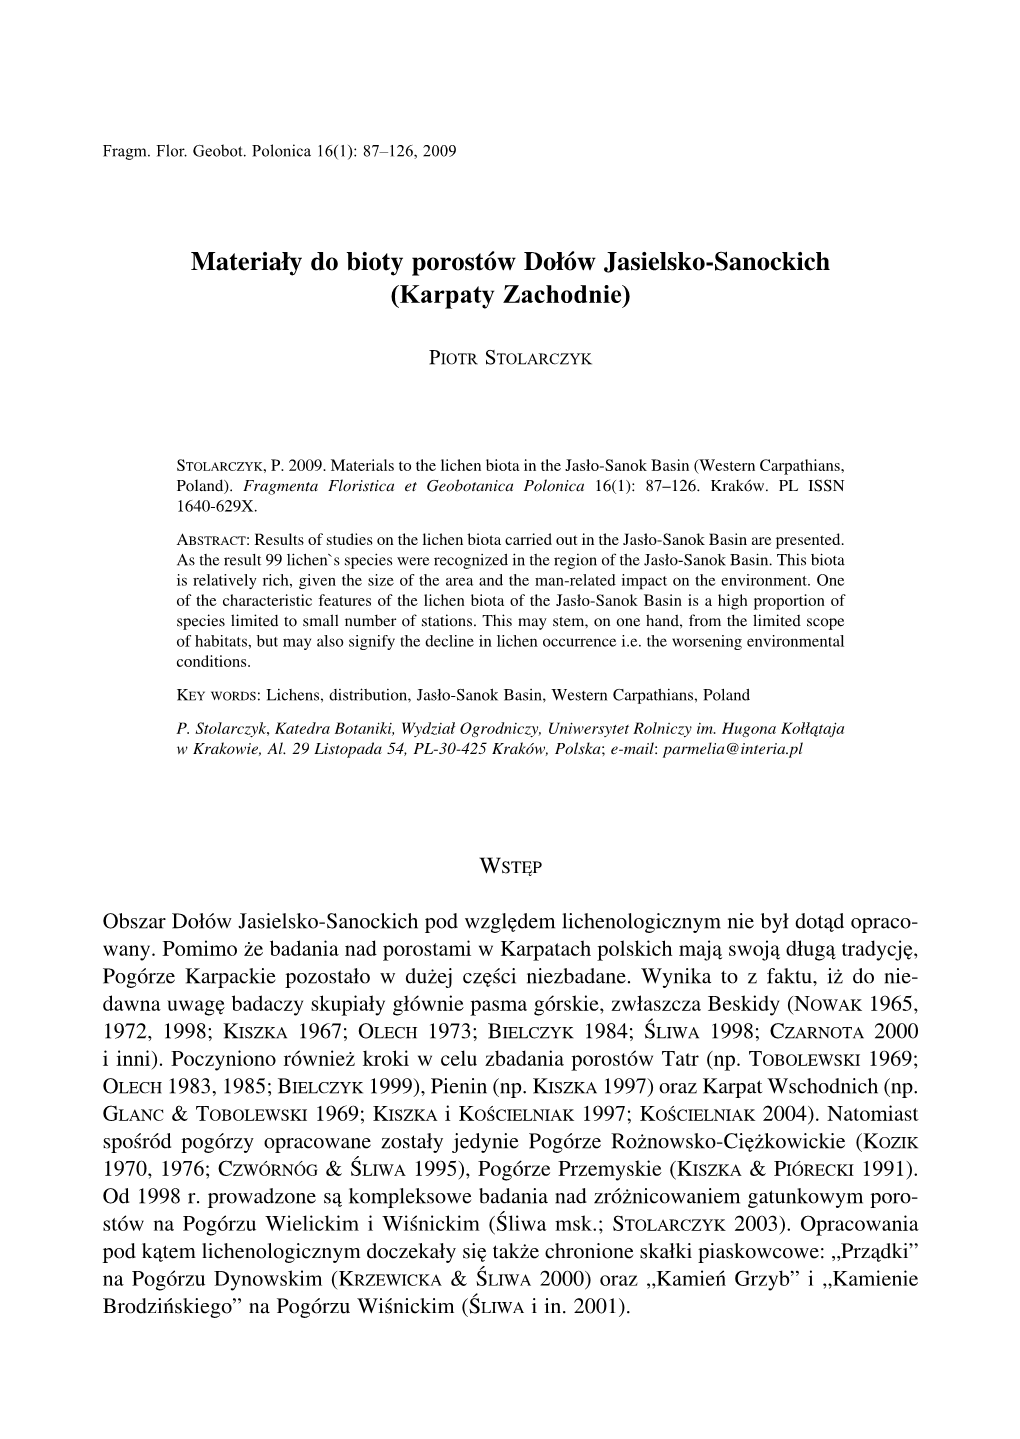 Materiały Do Bioty Porostów Dołów Jasielsko-Sanockich (Karpaty Zachodnie)